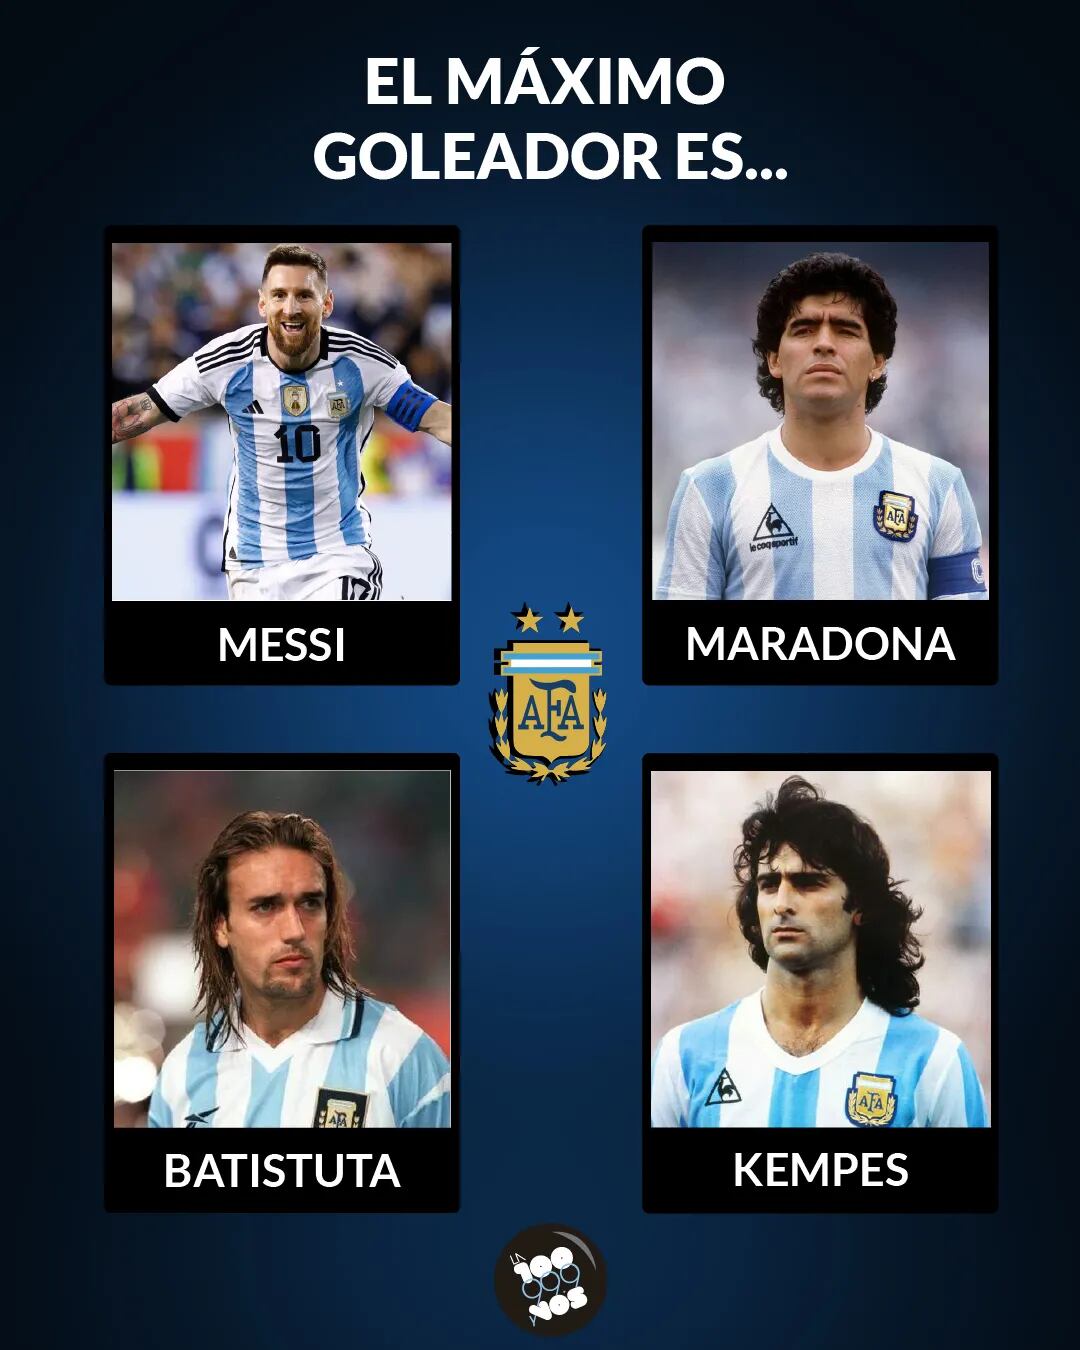 Desafío deportivo: ¿quién es el jugador de la Selección Argentina que hizo más goles en Mundiales?